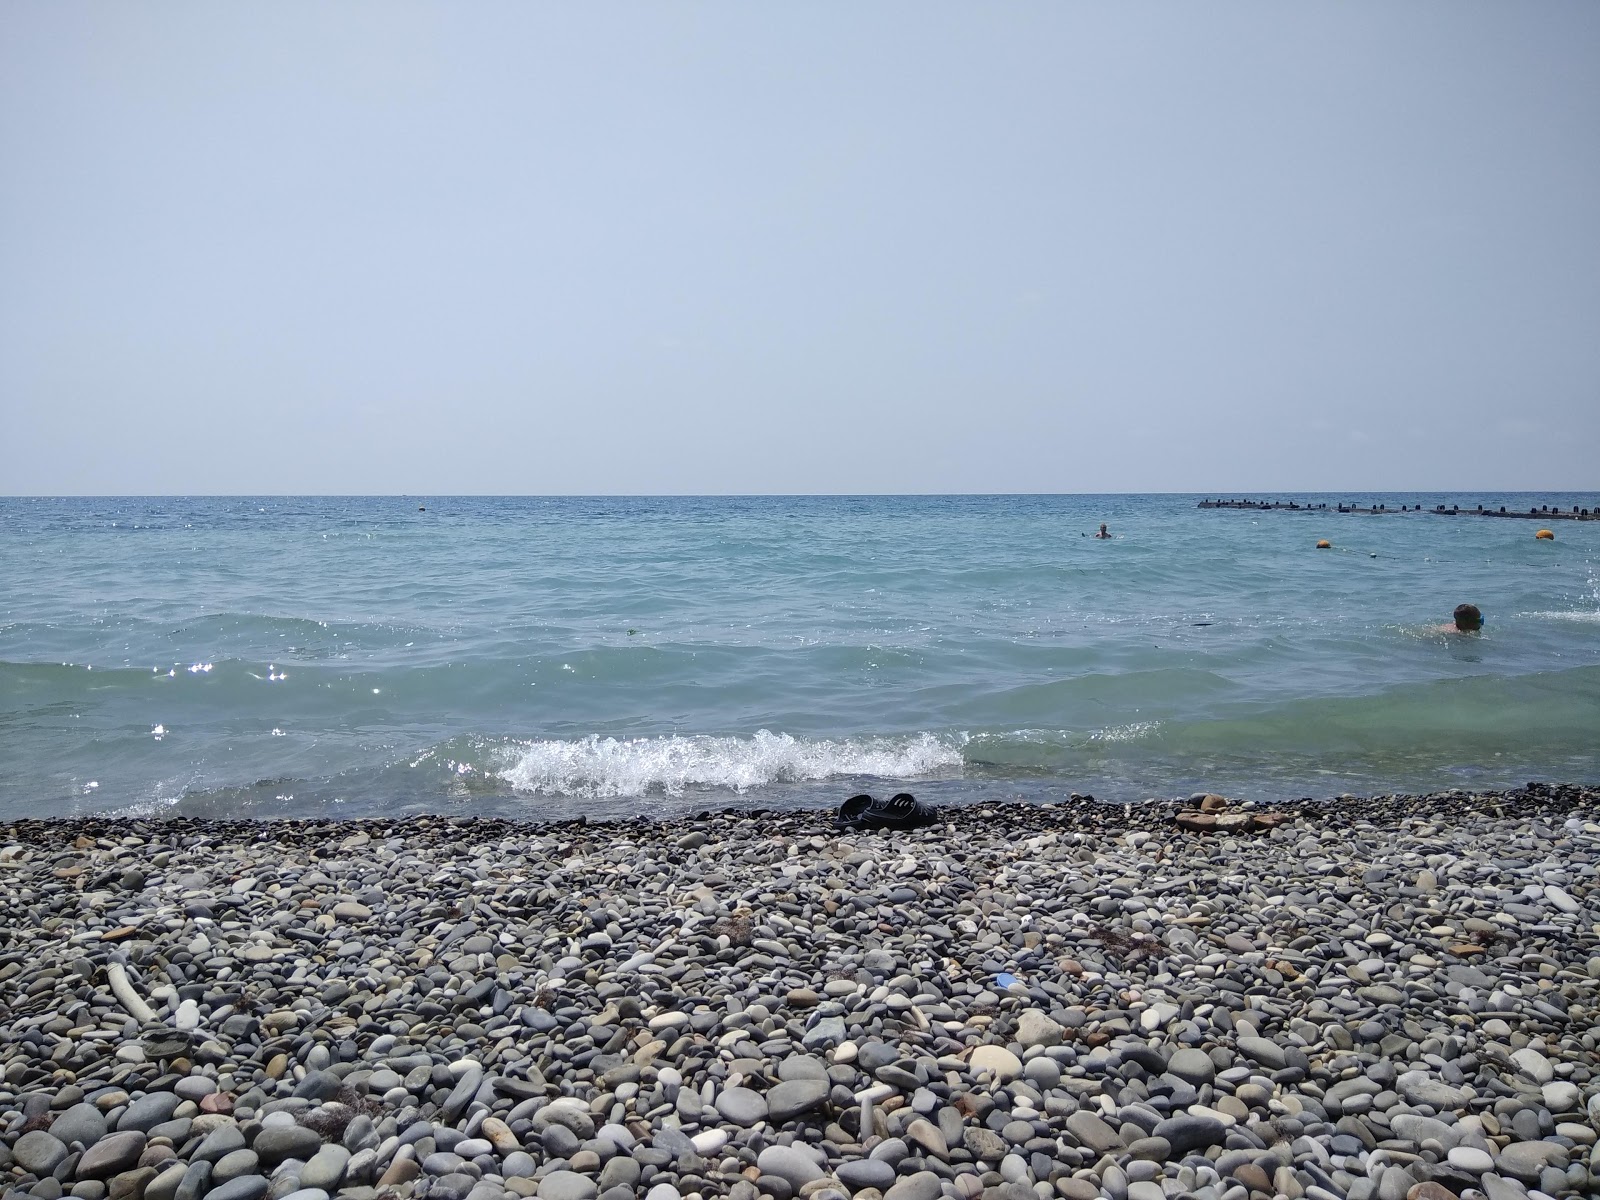 Zorka beach'in fotoğrafı geniş plaj ile birlikte